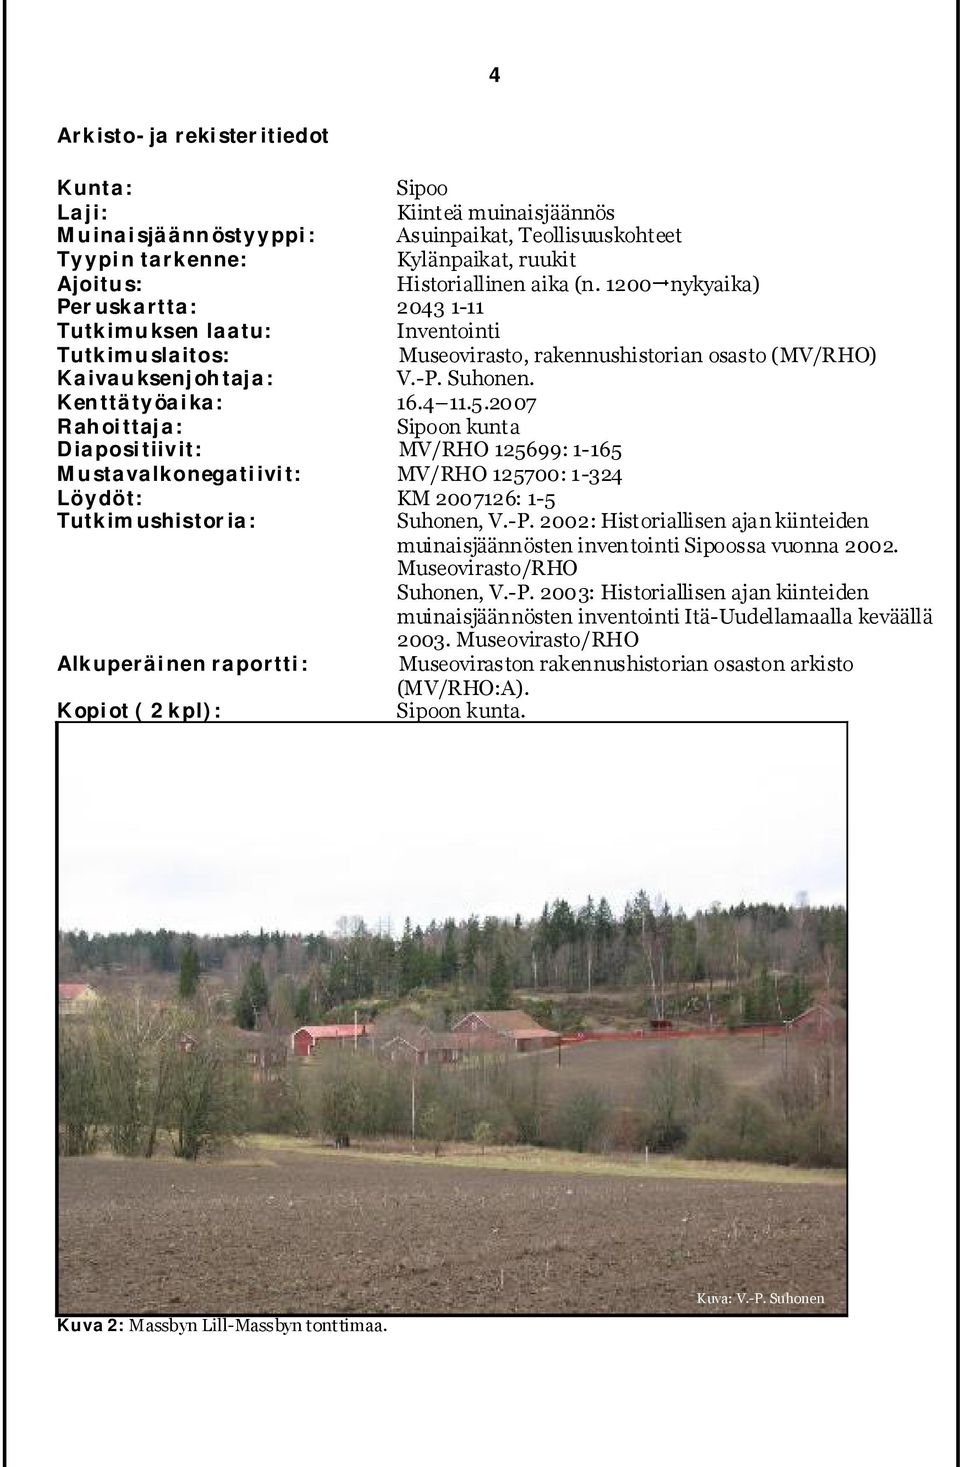 2007 Rahoittaja: Sipoon kunta Diapositiivit: MV/RHO 125699: 1-165 Mustavalkonegatiivit: MV/RHO 125700: 1-324 Löydöt: KM 2007126: 1-5 Tutkimushistoria: Suhonen, V.-P.